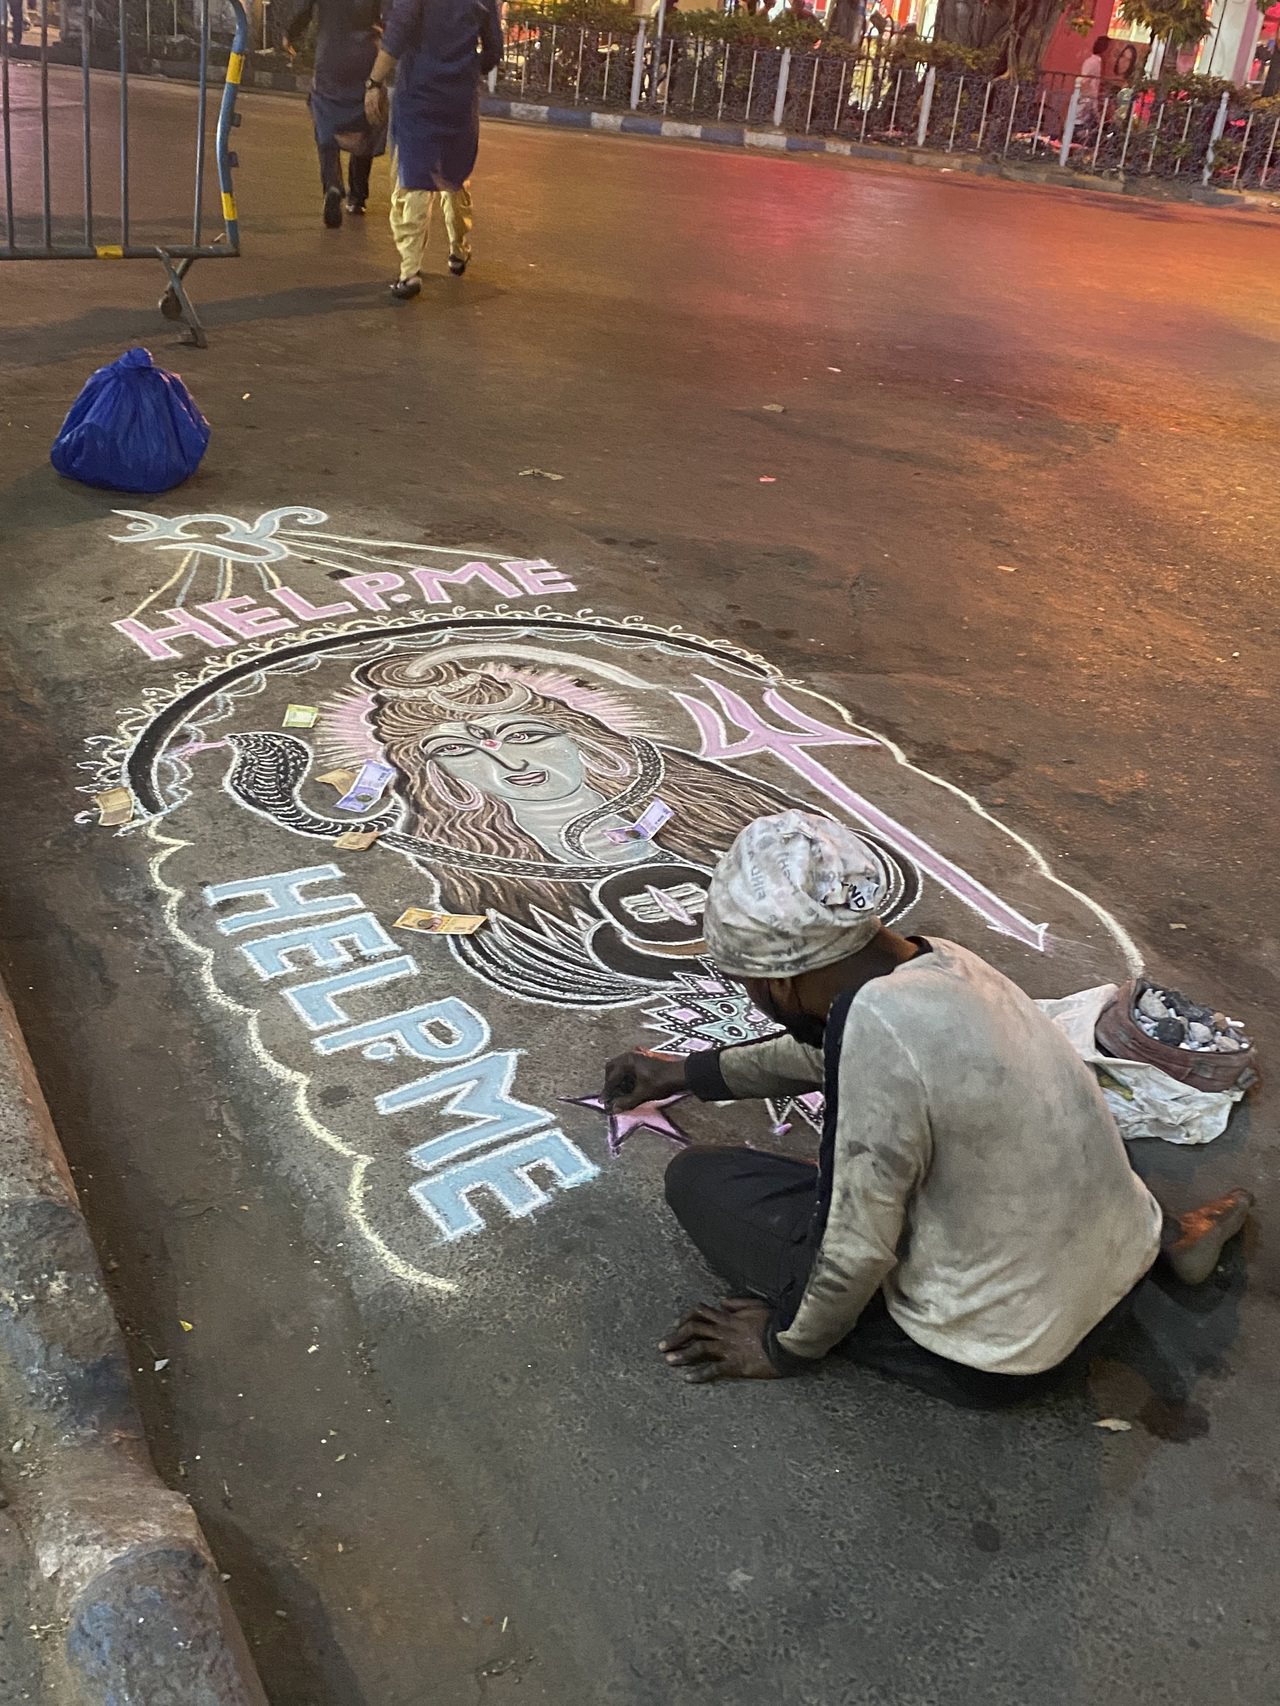 ▲加爾各答街道上有人在路上作畫